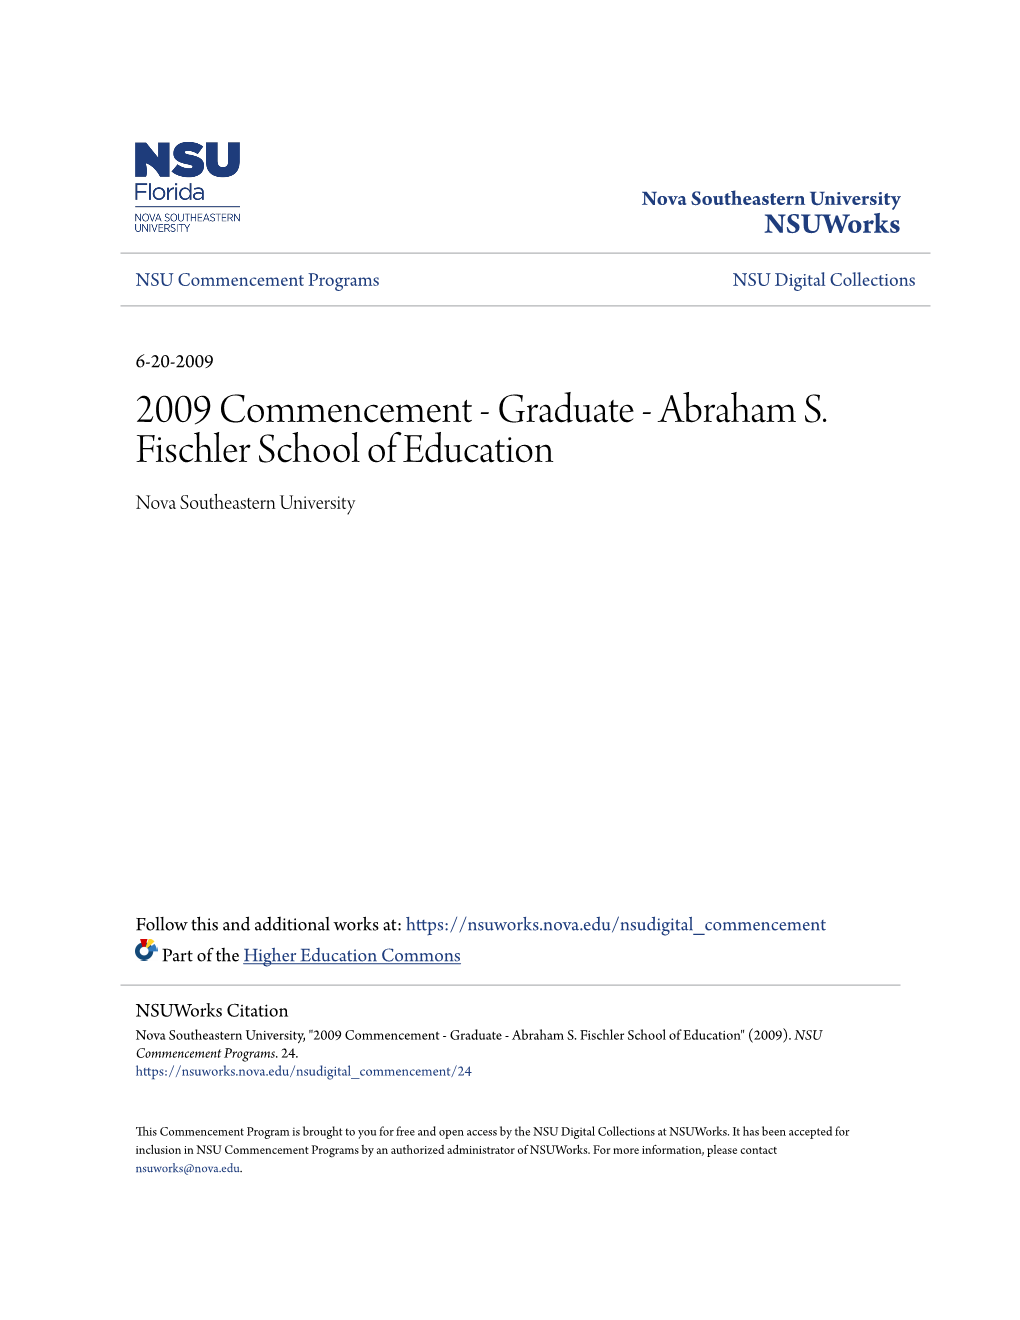 2009 Commencement - Graduate - Abraham S